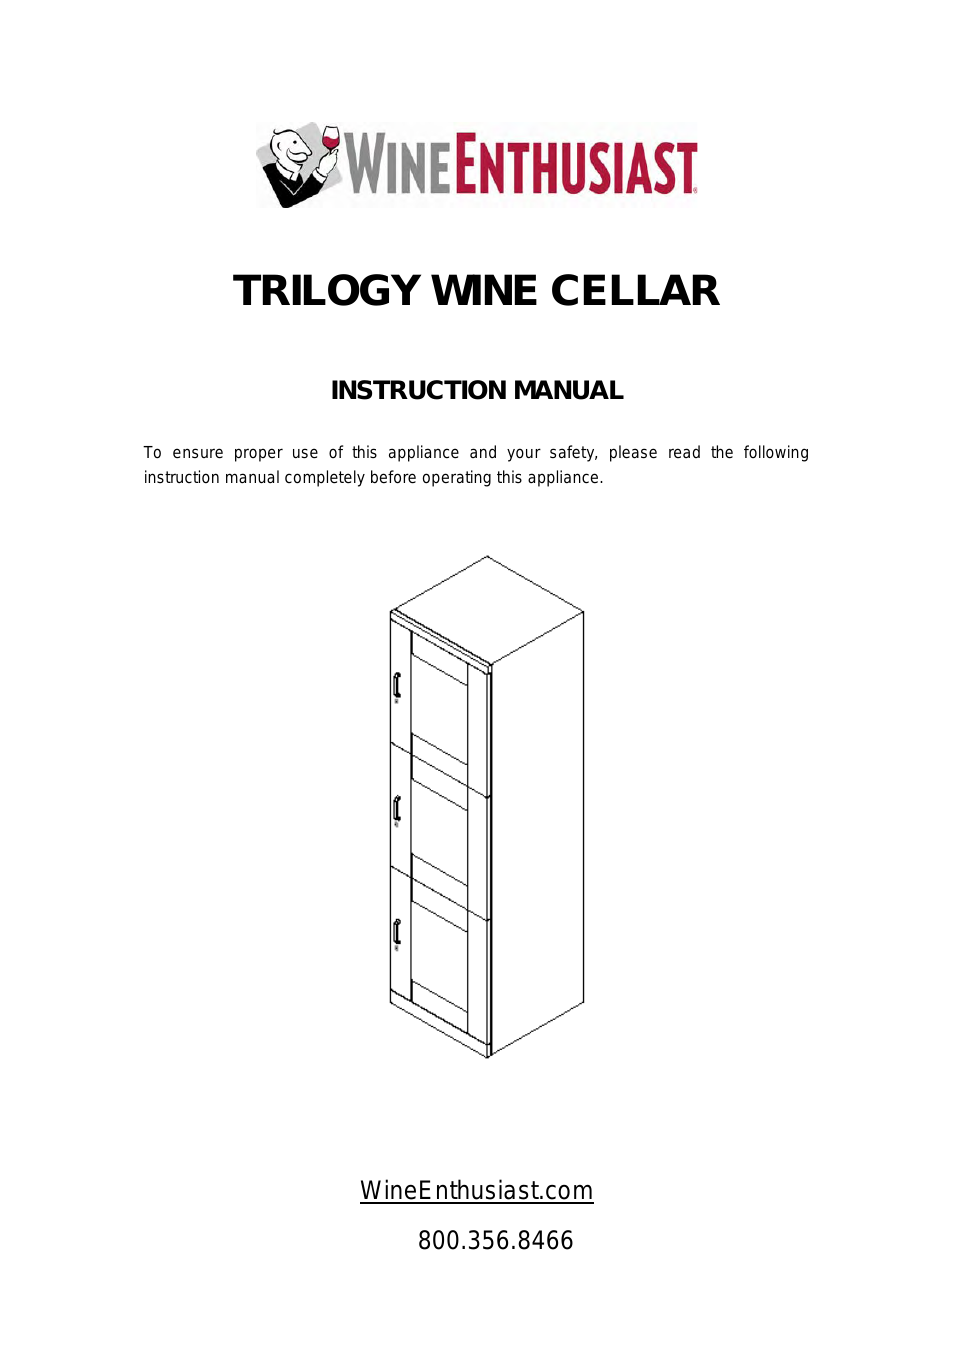 Trilogy Quad Wine Cellar